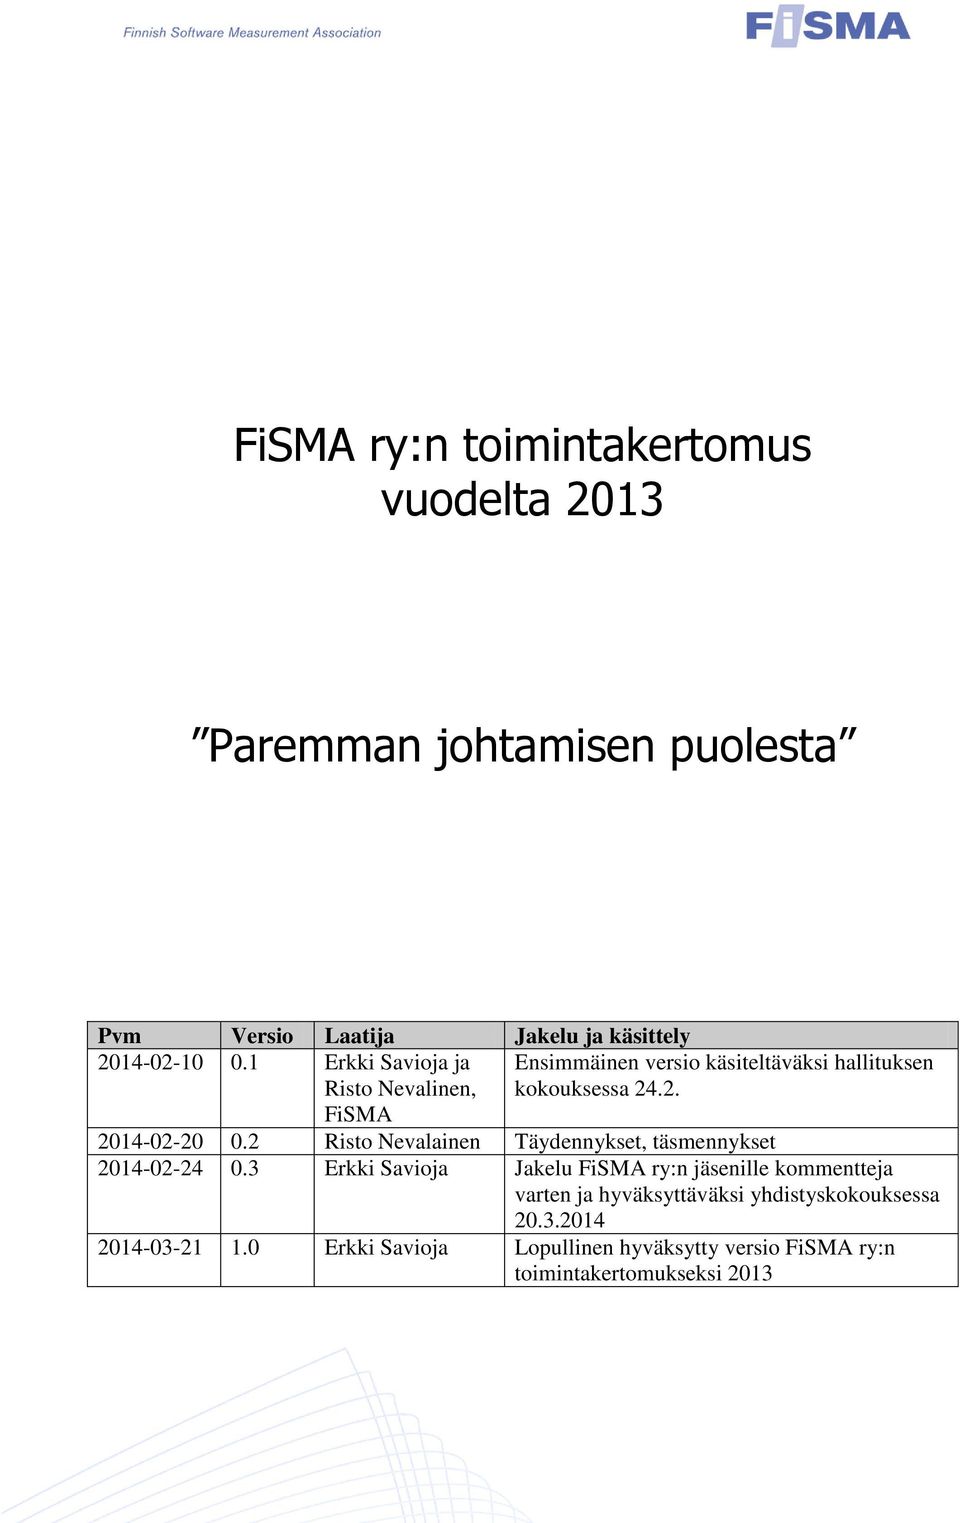 2 Risto Nevalainen Täydennykset, täsmennykset 2014-02-24 0.